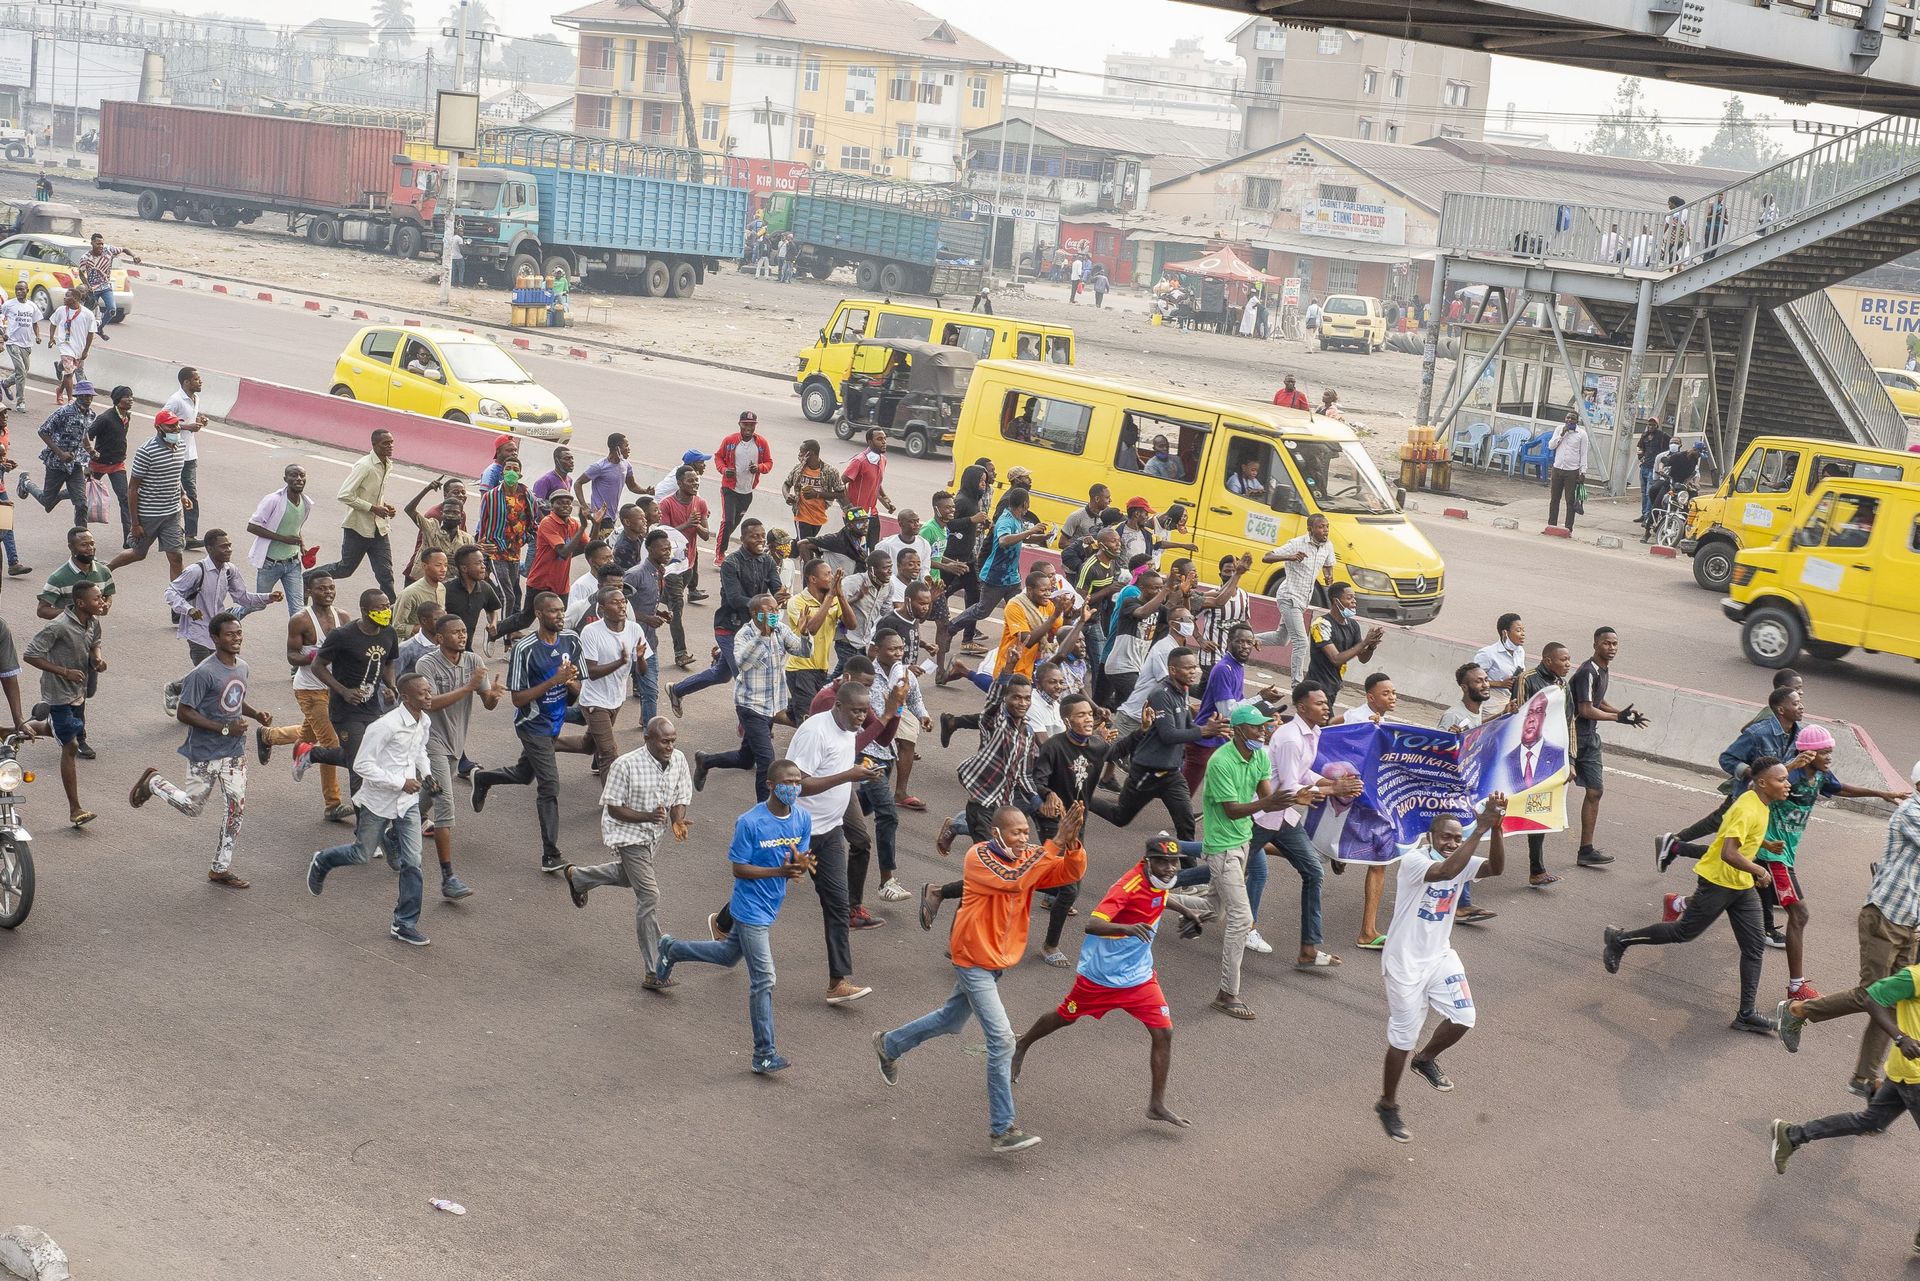 RDC des milliers de manifestants bravent à nouveau l’interdiction de